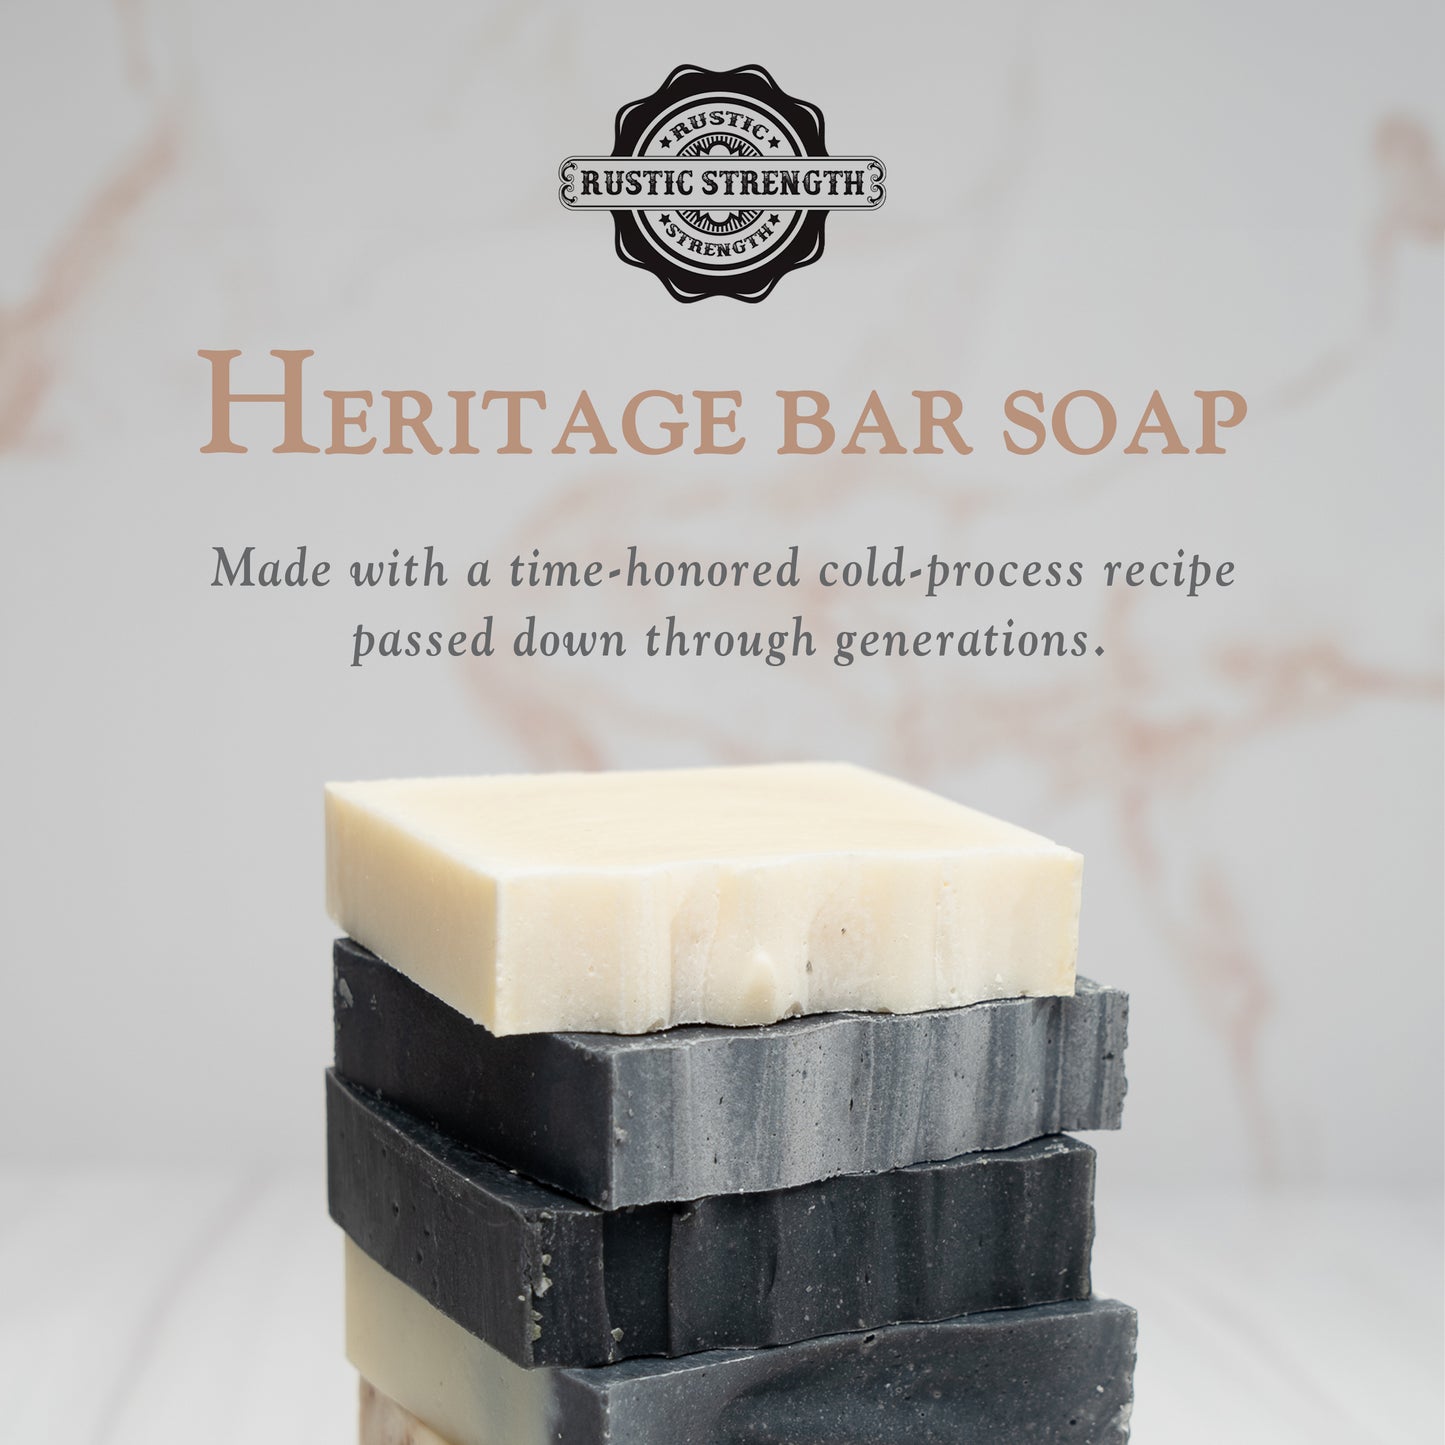 Mahogany Rain | Heritage Bar Soap